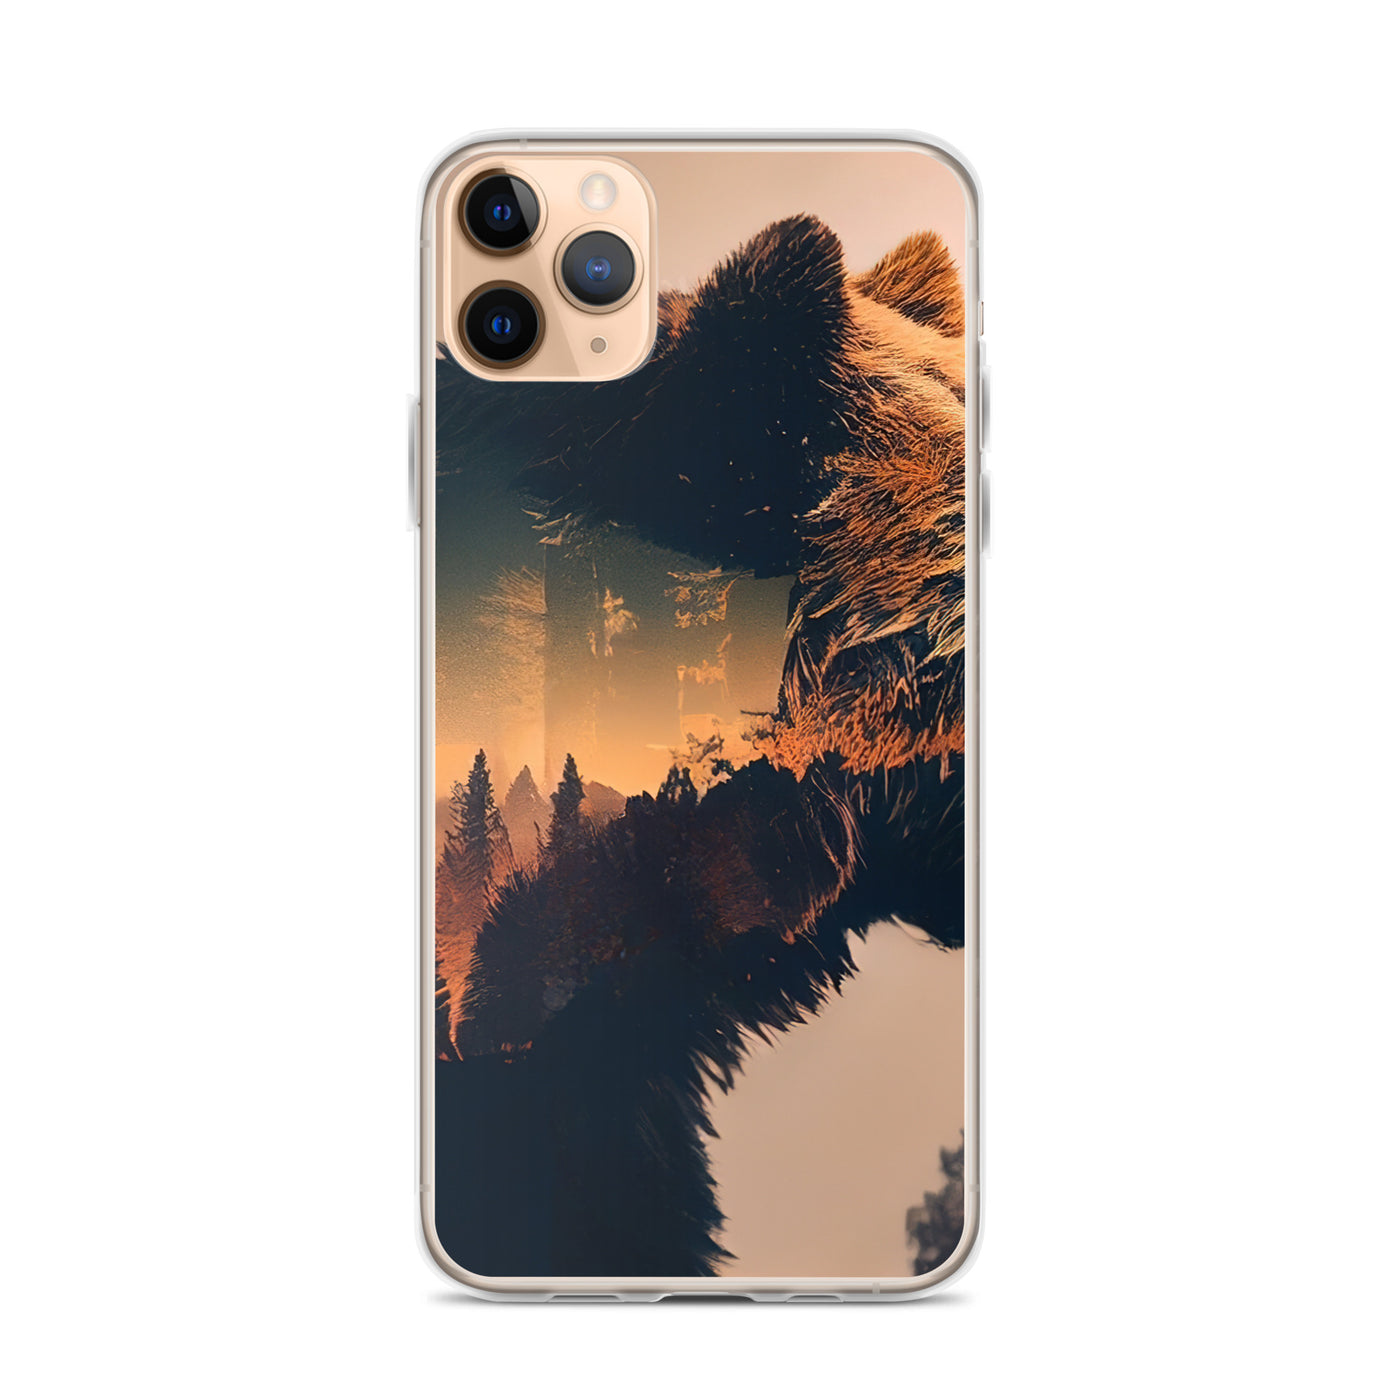 Bär und Bäume Illustration - iPhone Schutzhülle (durchsichtig) camping xxx iPhone 11 Pro Max